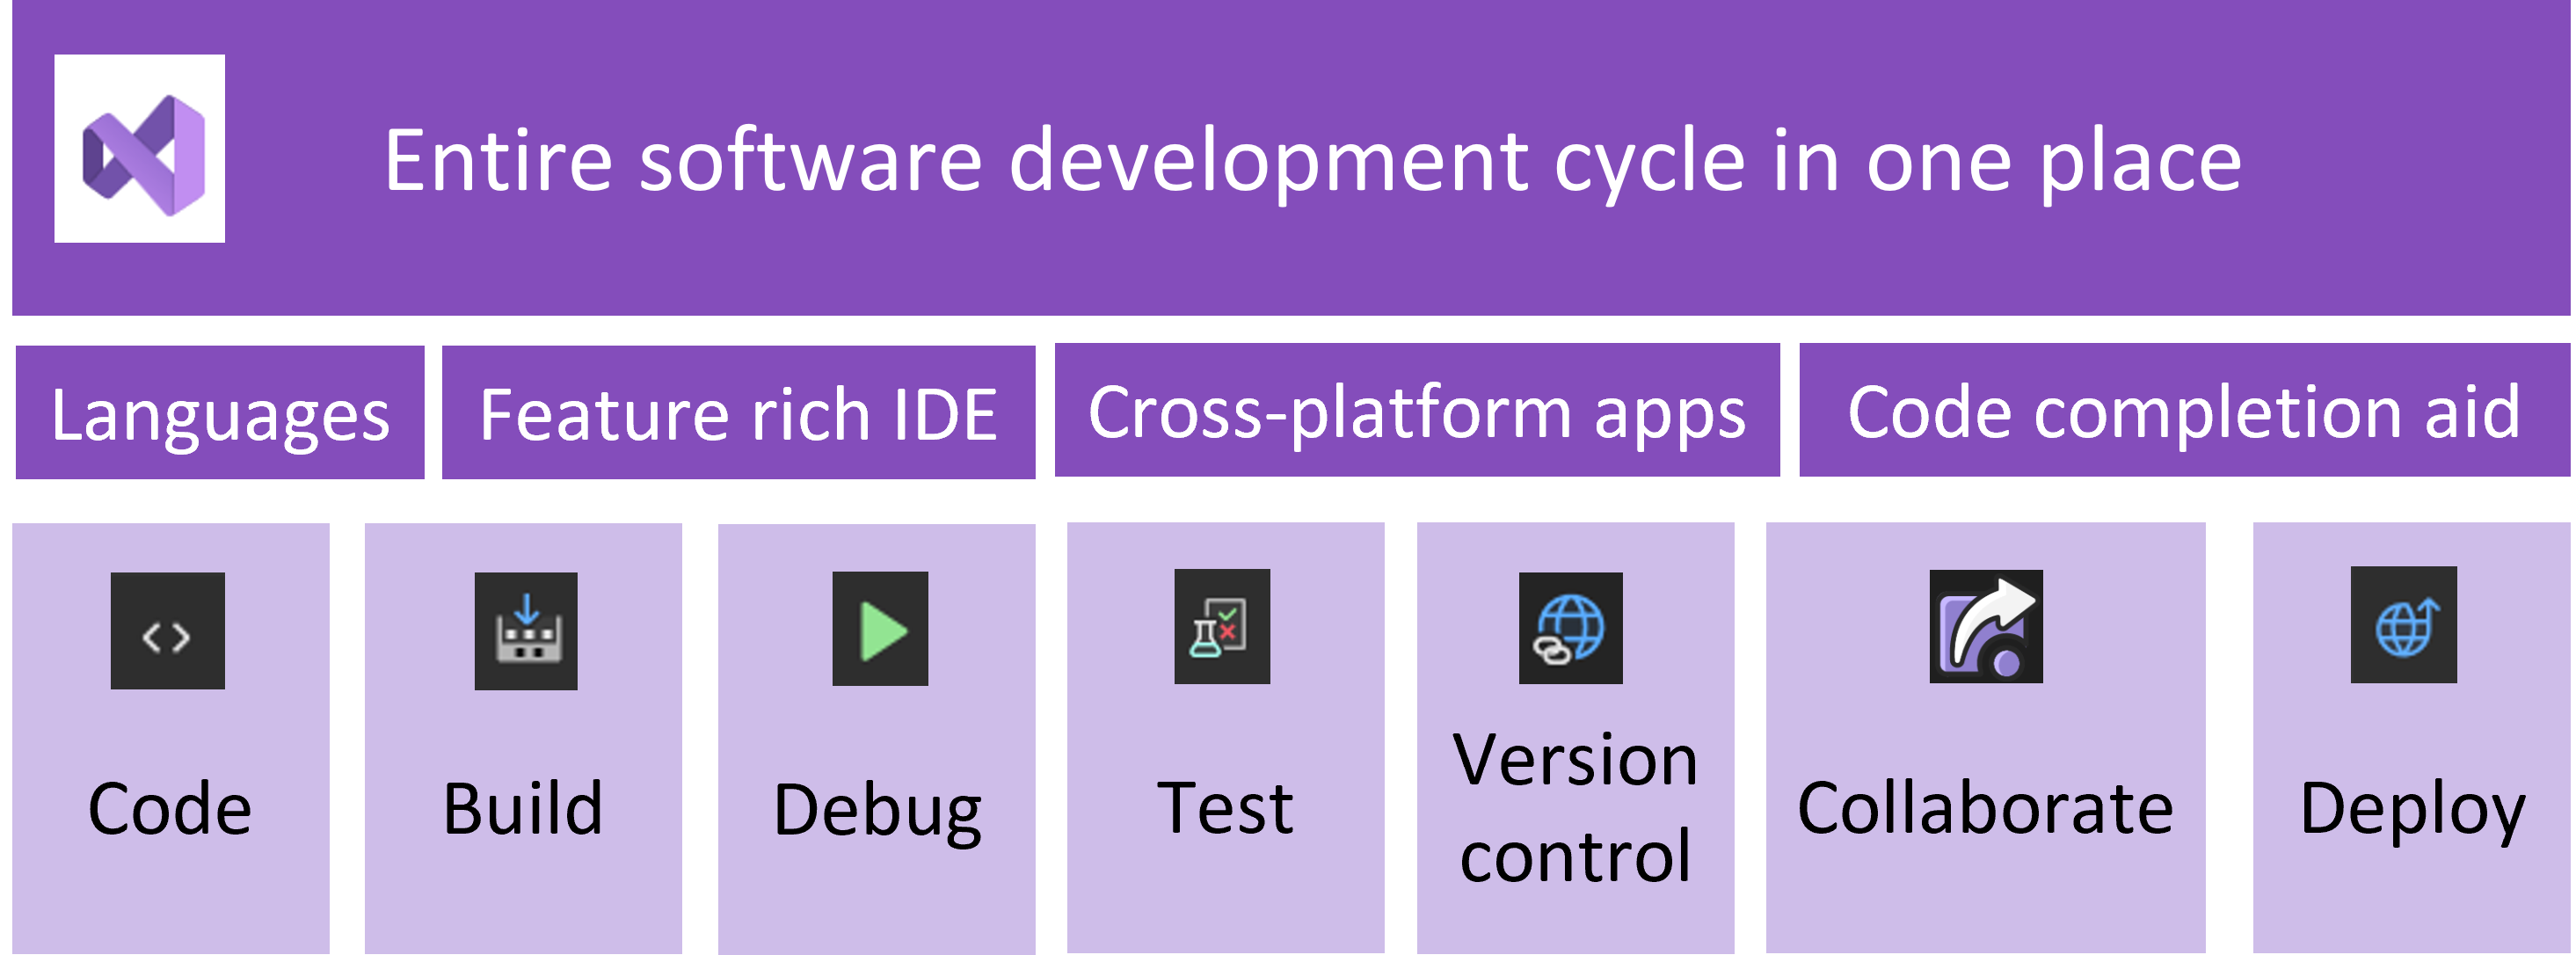 圖表顯示軟體開發週期，Visual Studio 可處理流程的每個部分。